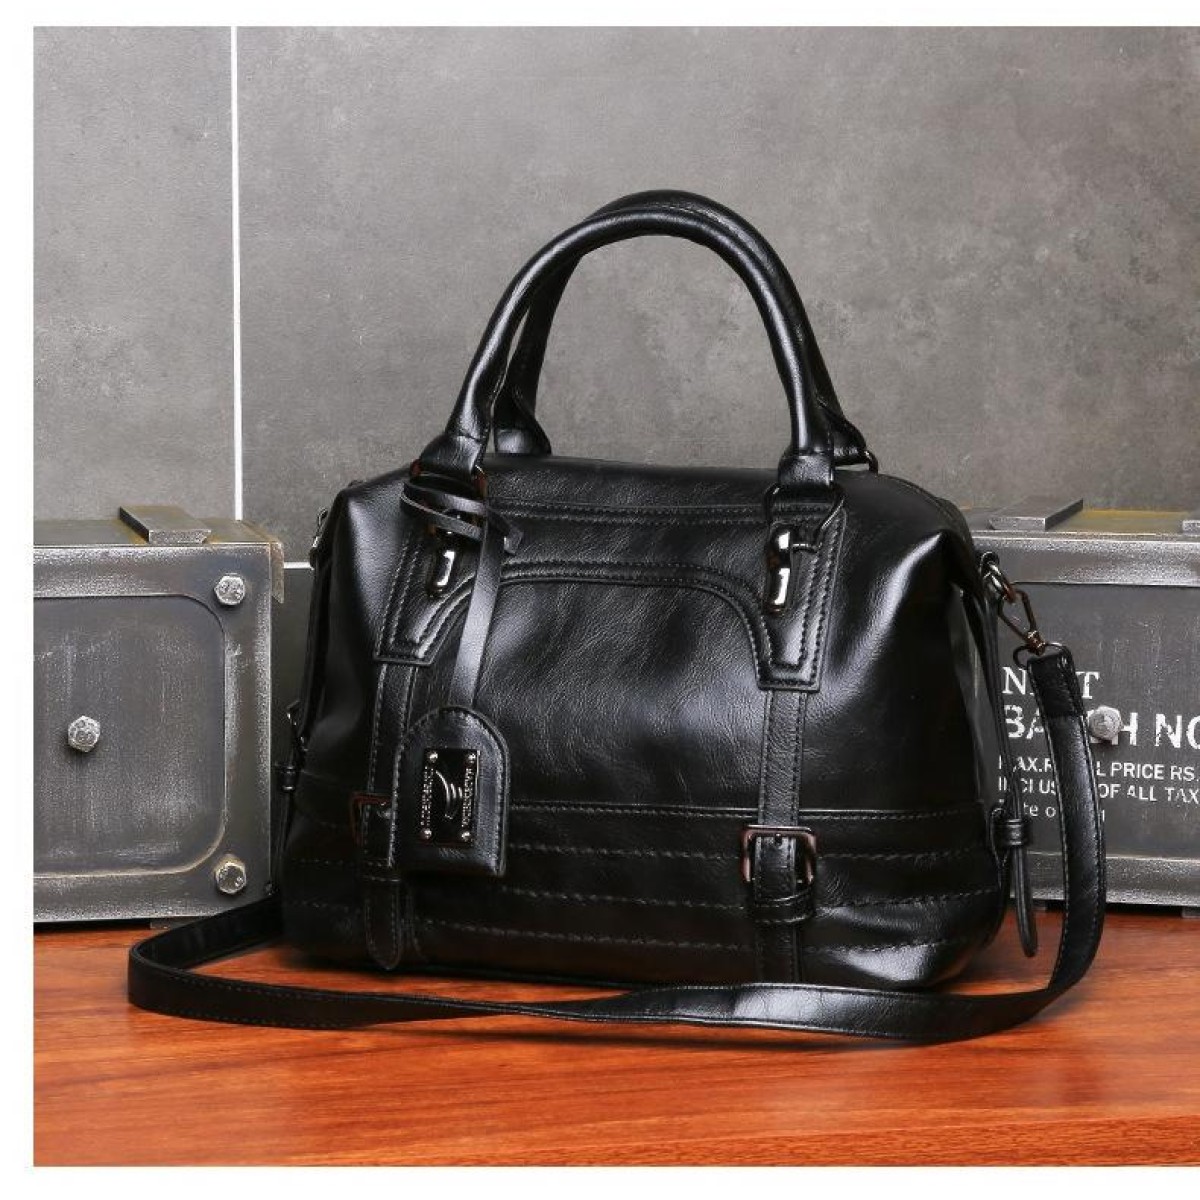 Ladies Casual Handbag Soft-faced Solid Color One-shoulder Diagonal Large Bag(Black)